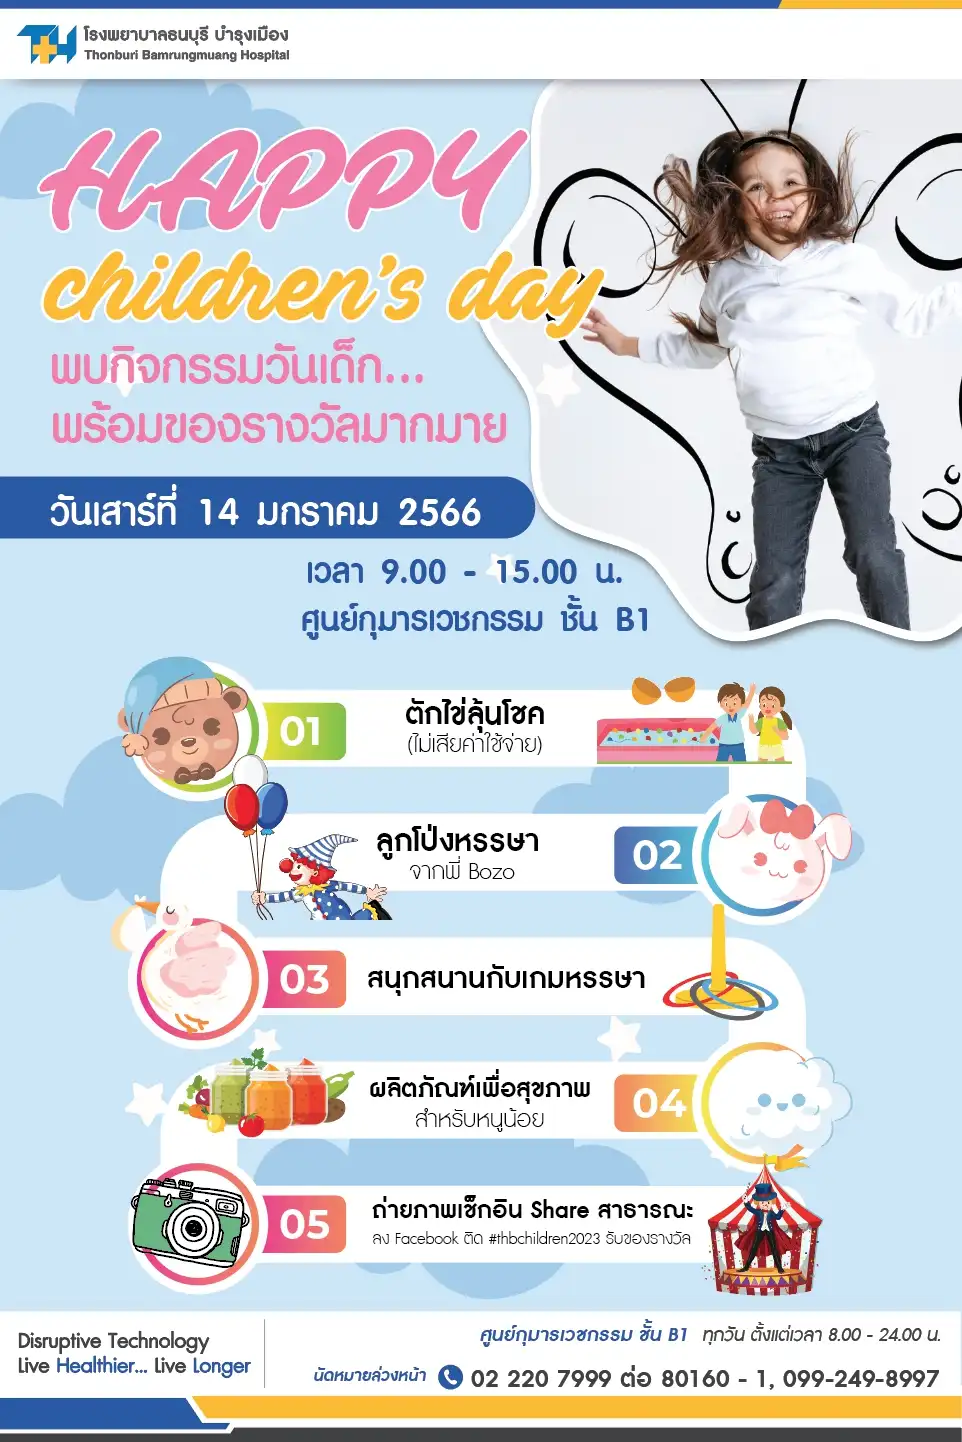 Happy Childrens Day 2023 โรงพยาบาลธนบุรี บำรุงเมือง ร่วมสนุกกิจกรรมวันเด็กในโรงพยาบาล